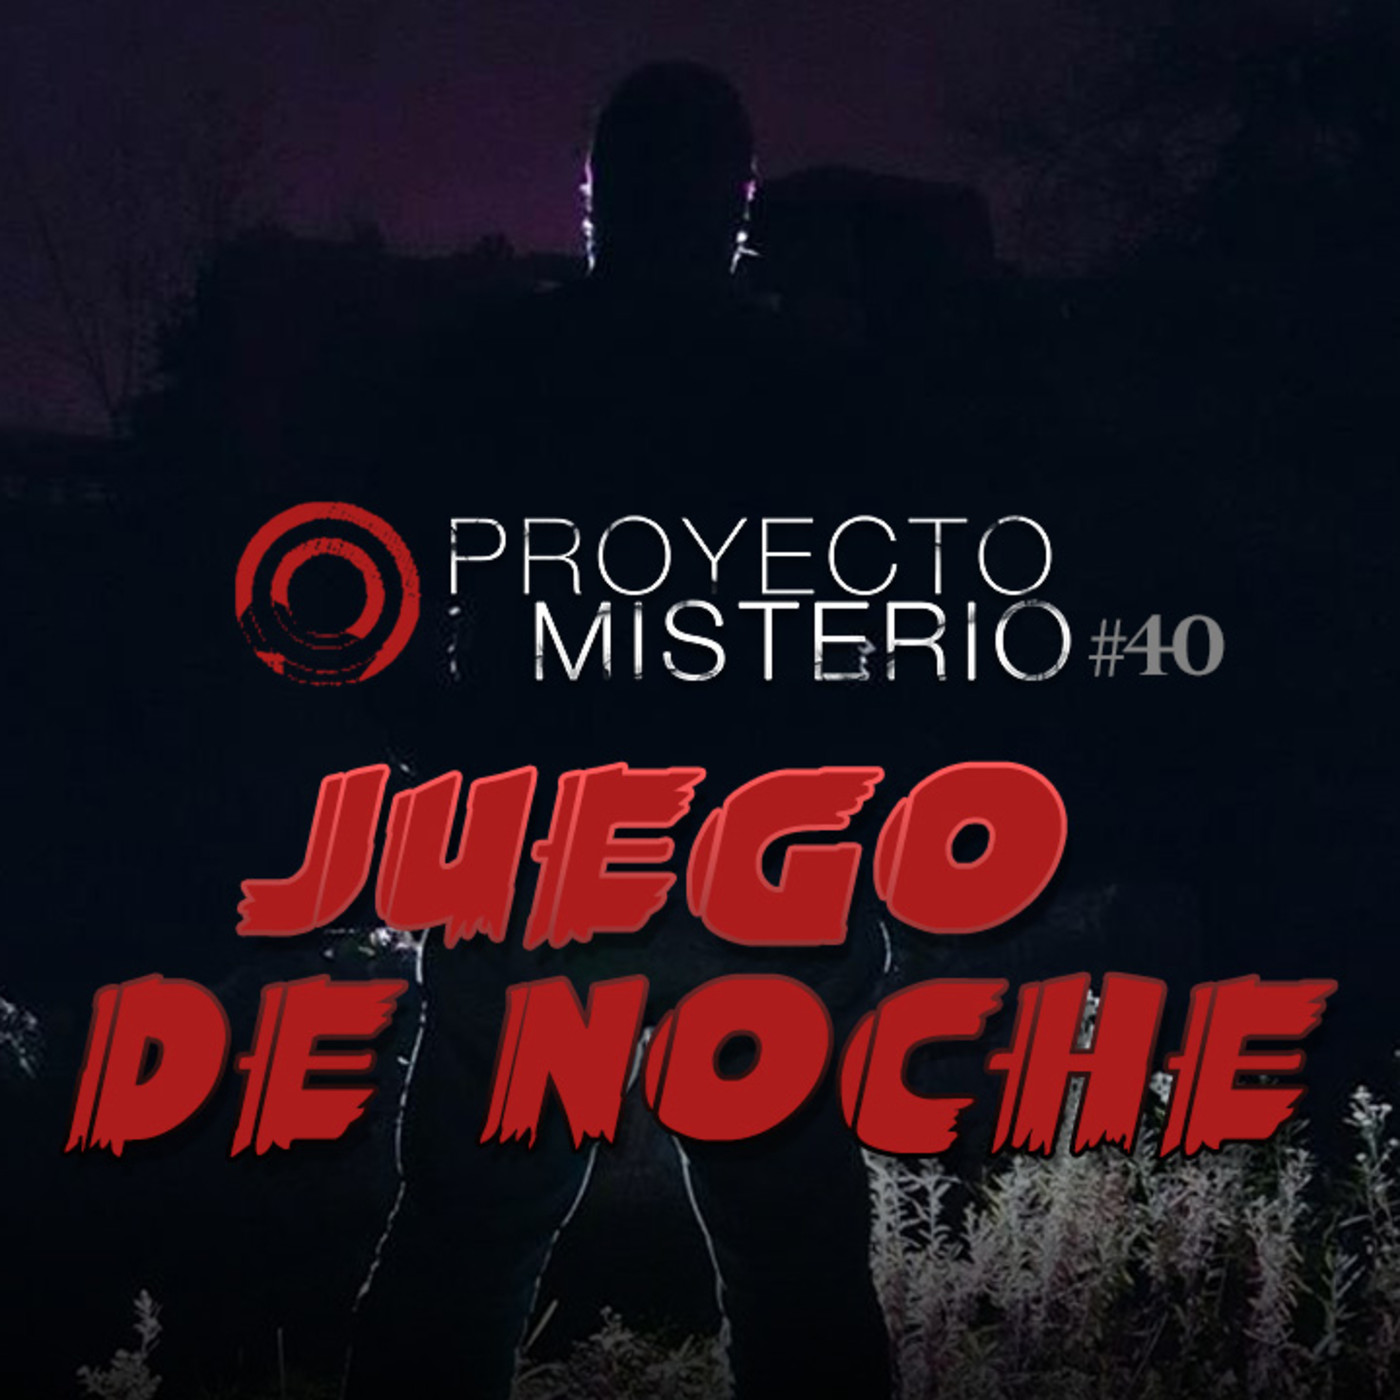 Proyecto Misterio 40: Juego de noche